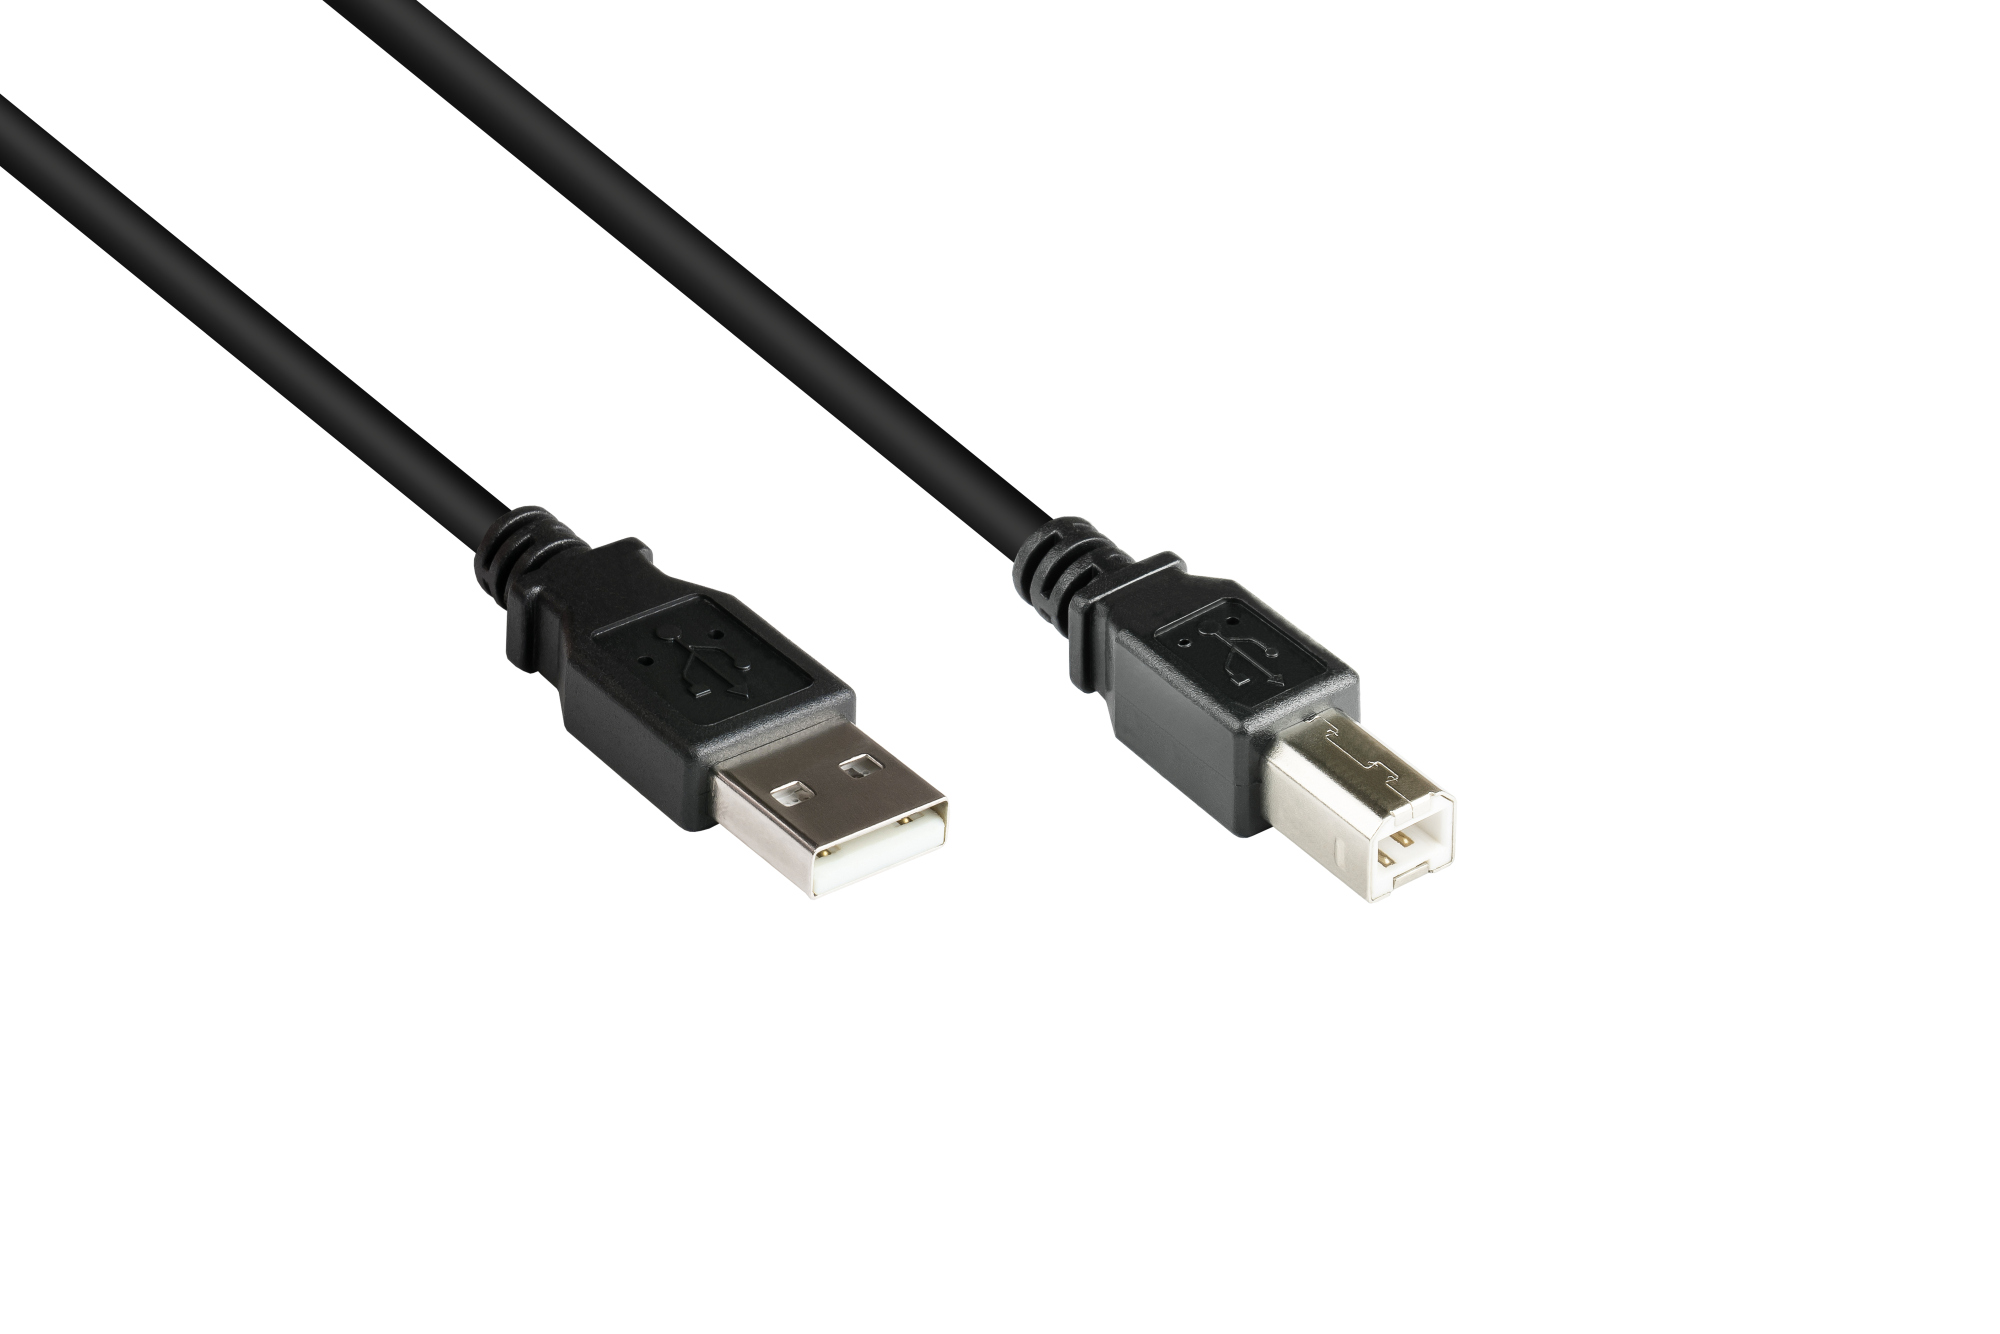 Verlängerungskabel USB 3.0 Stecker A an Buchse A, schwarz, 1,8m